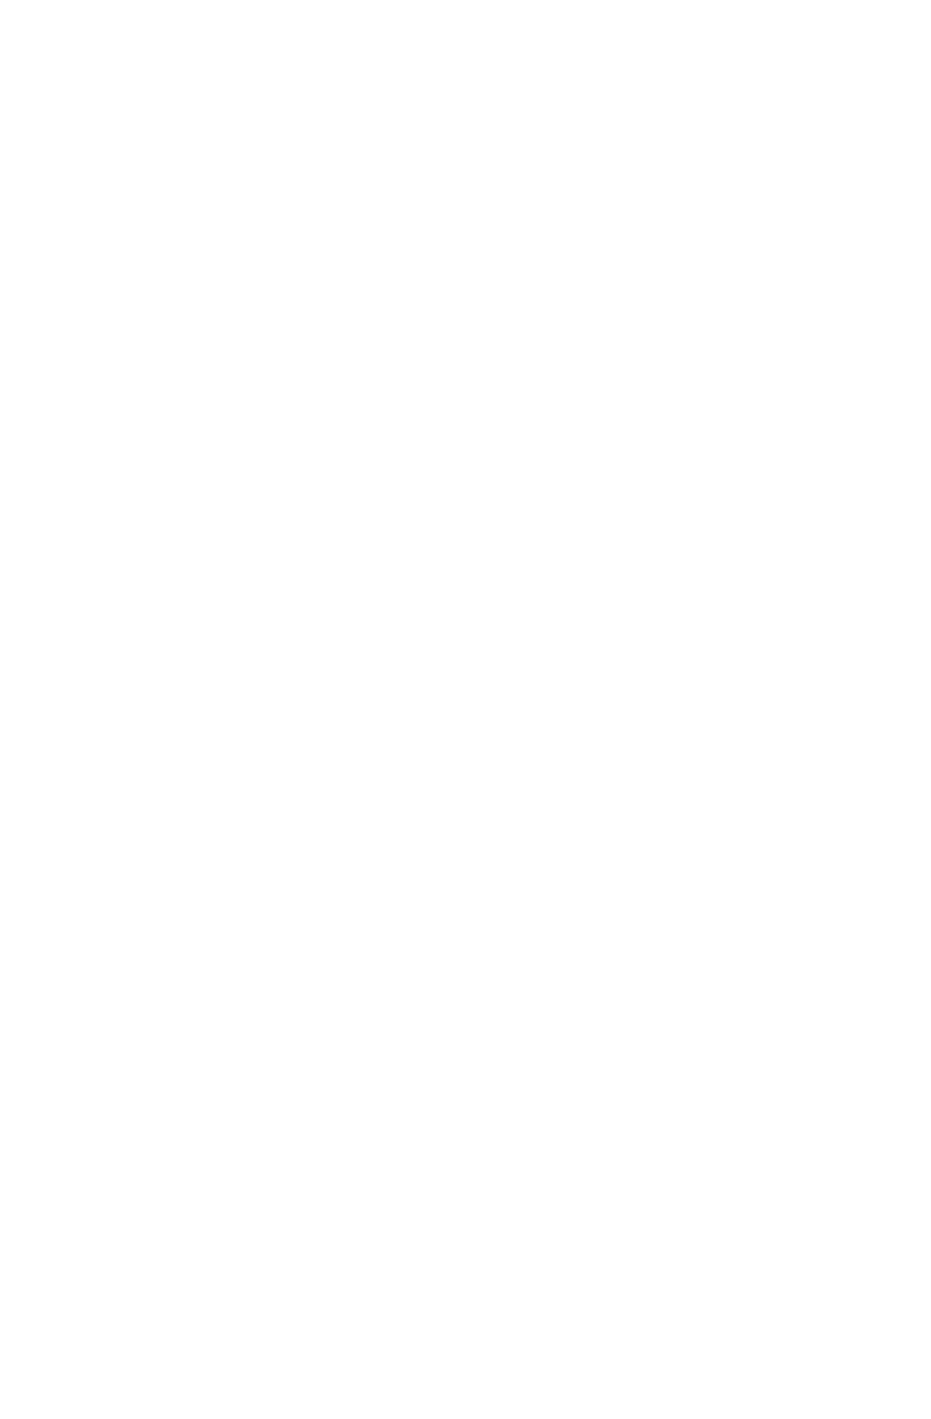 Kamp Klamath 